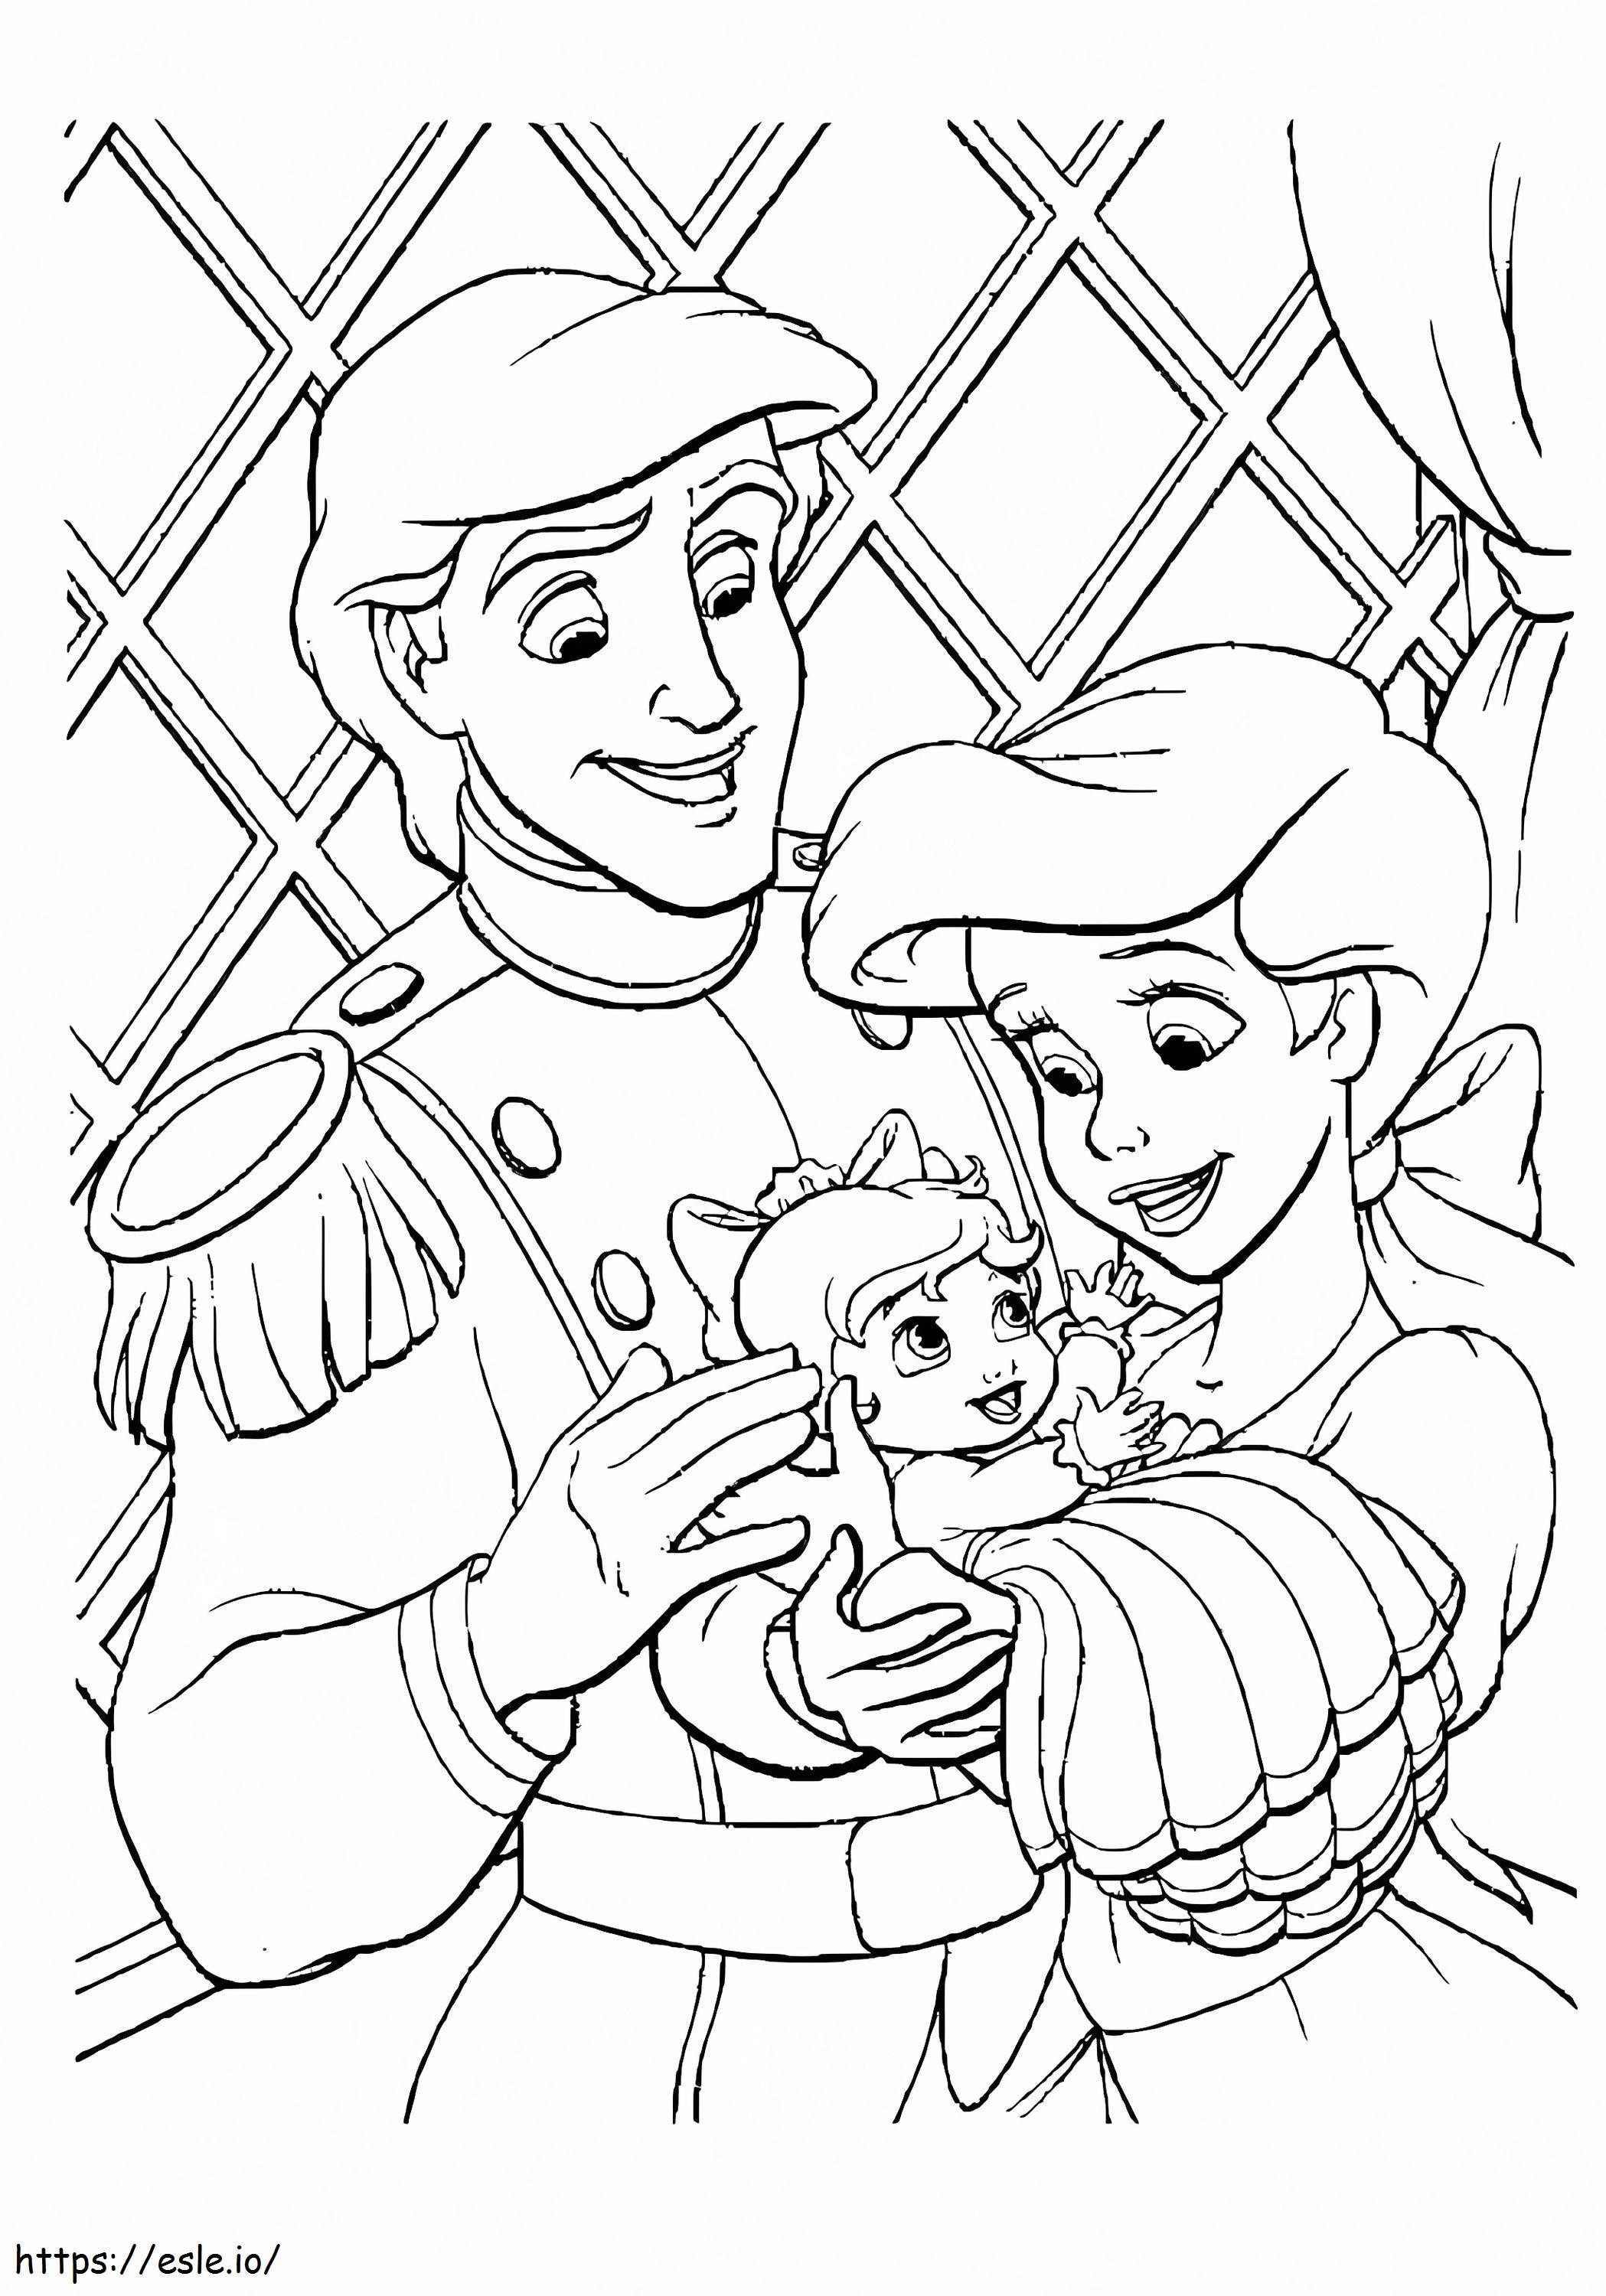 Ariel și Eric ținând copilul în brațe de colorat